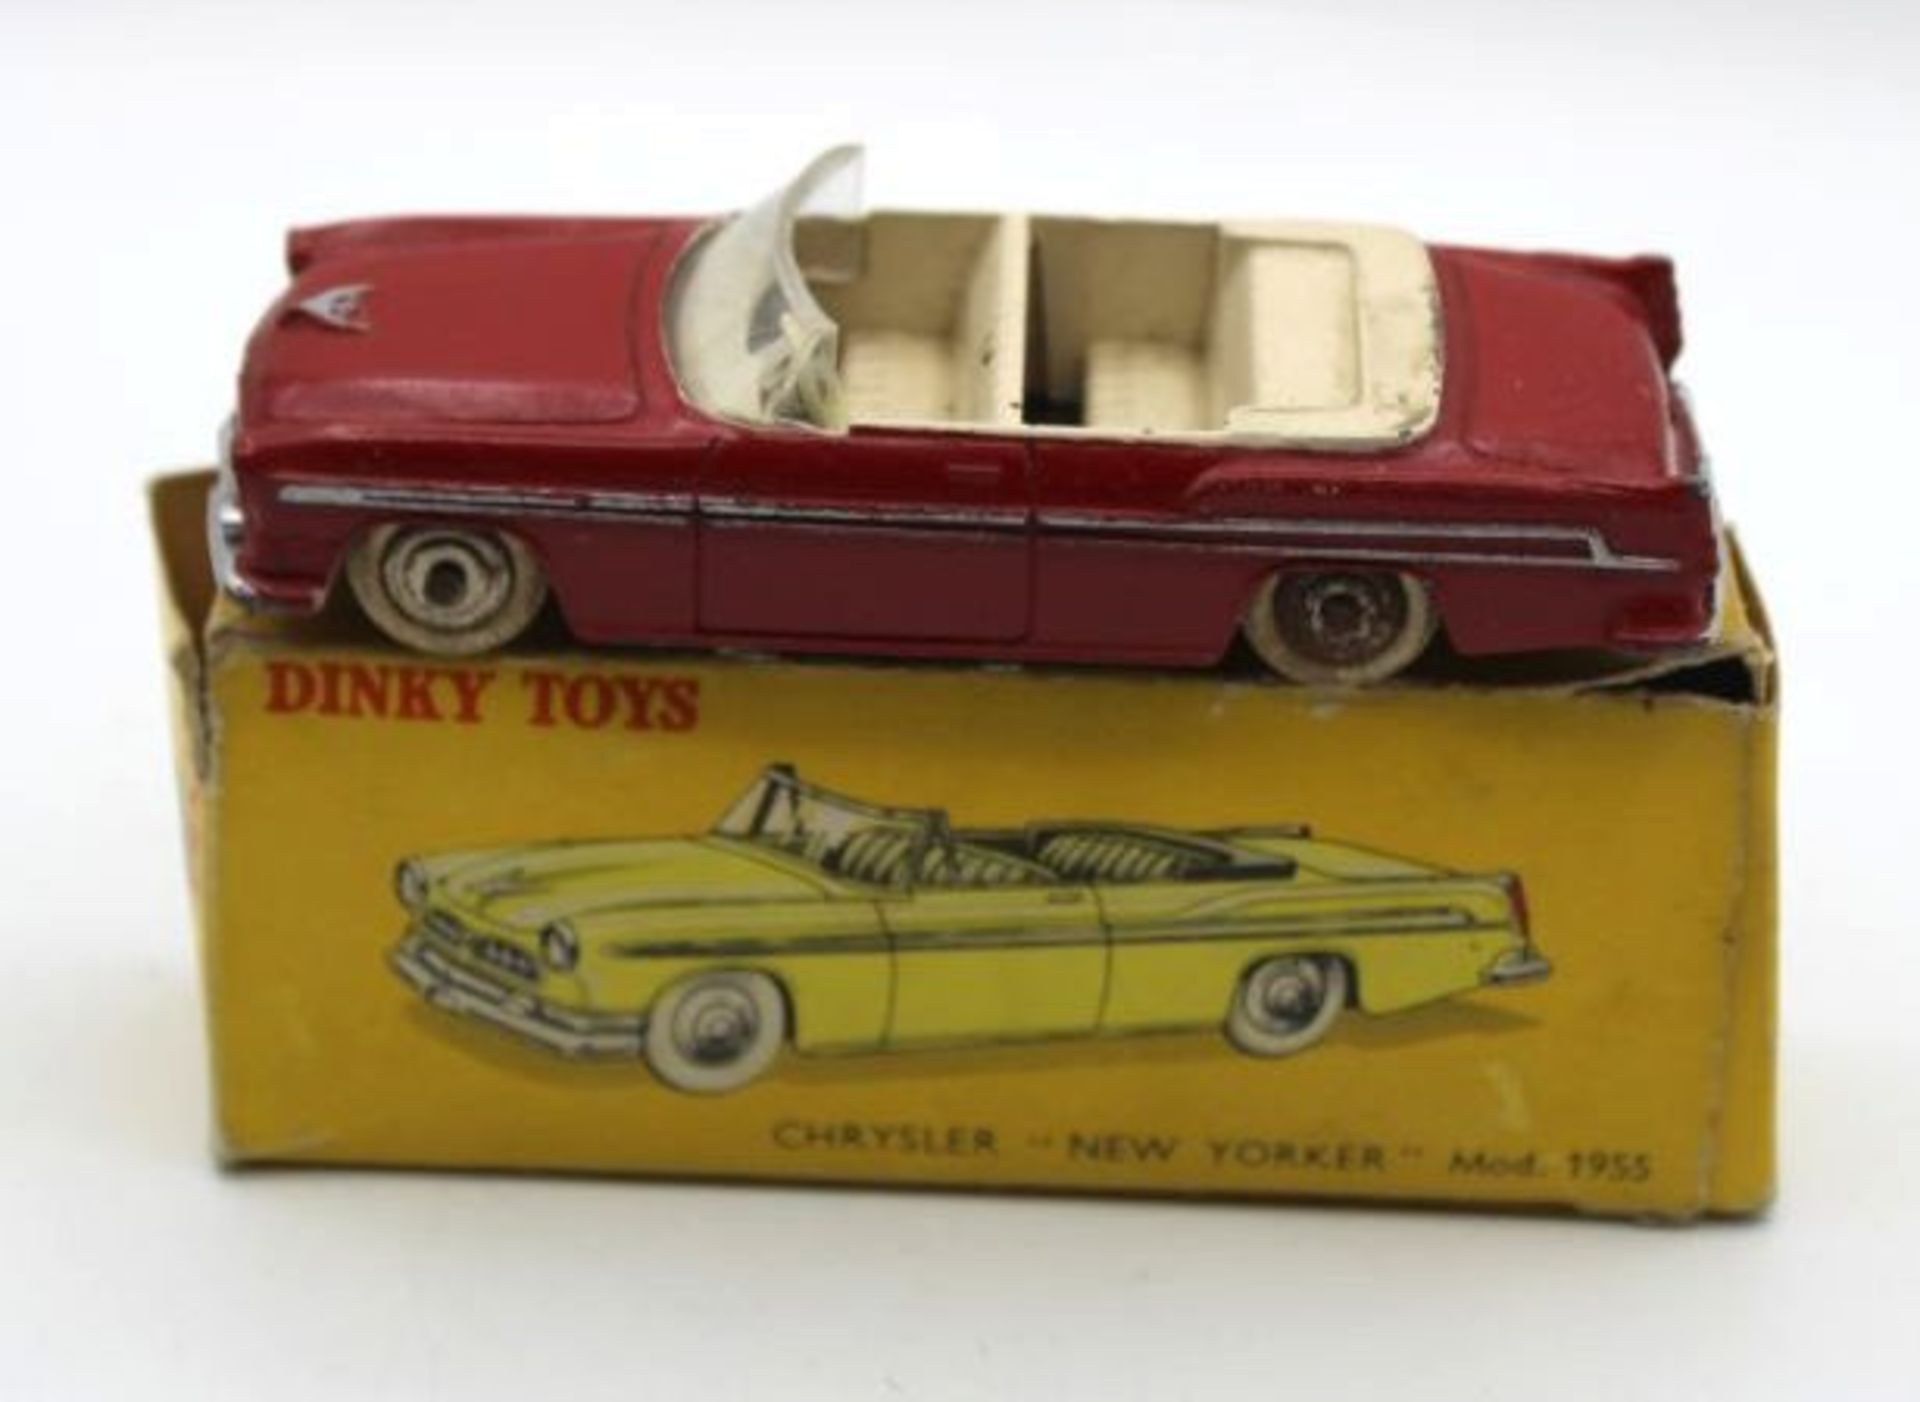 Dinky Toys "Chrysler New Yorker", Frankreich, 1:43, bespielt, orig. Karton mit Läsuren.- - -22.